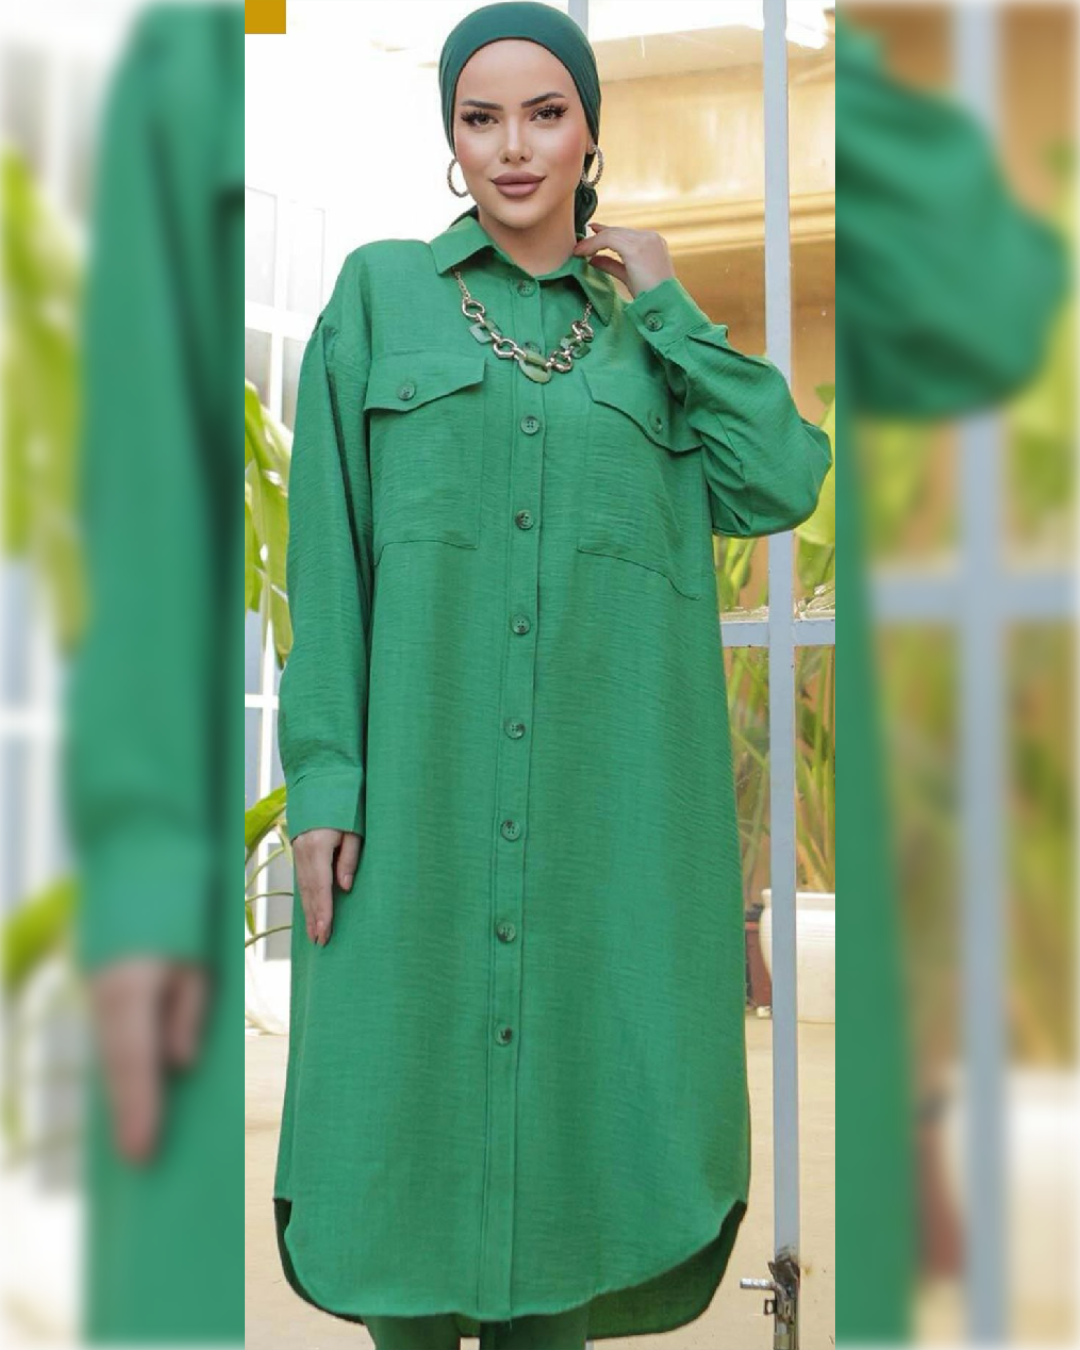 Suha Midi Tunic Fully buttoned in Green Shade قميص سهى الطويل و الواسع باللون الأخضر الجميل